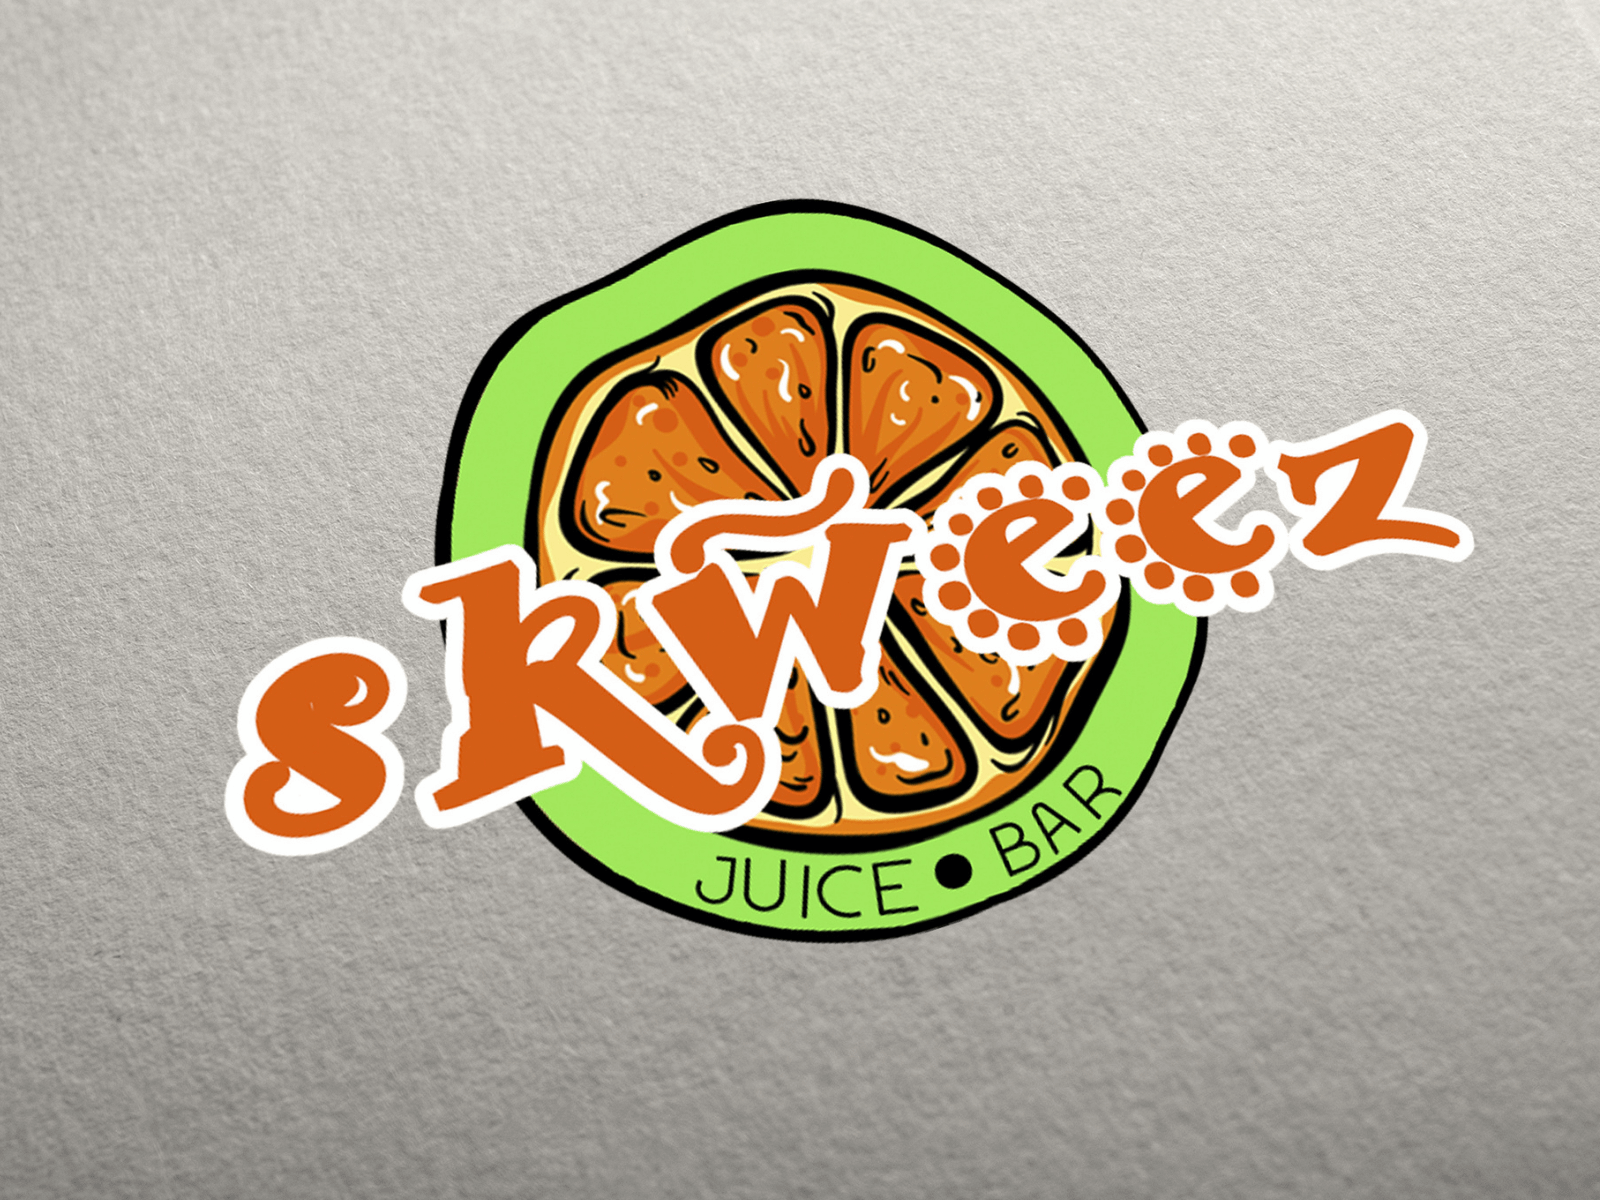 Skweez Juice Bar – Logo Design